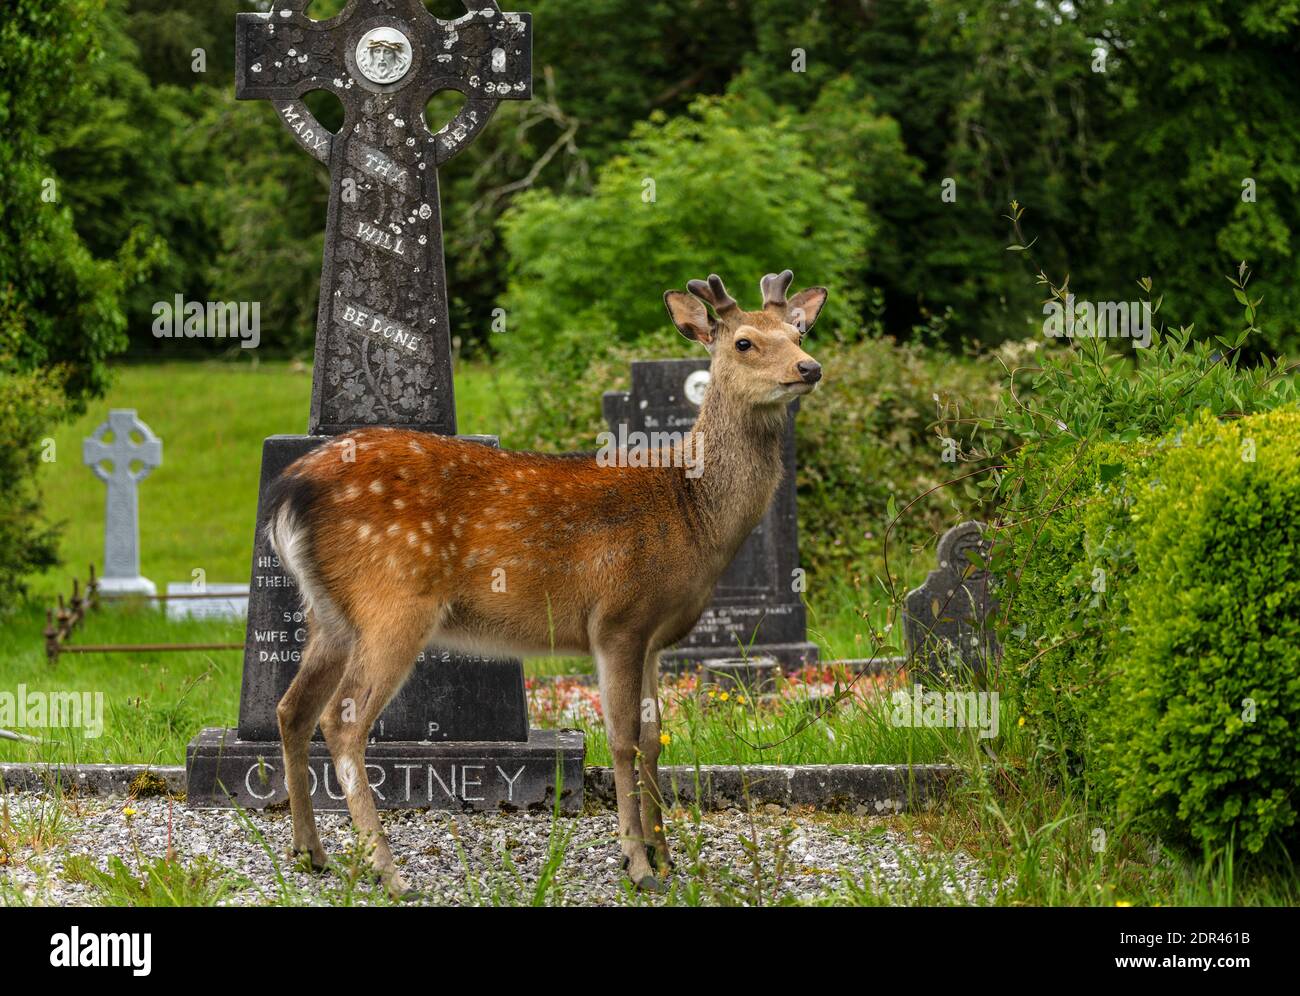 El joven ciervo en el cementerio irlandés de la abadía de Muckross en el Parque Nacional de Killarney, cerca de la ciudad de Killarney, condado de Kerry, Irlanda Foto de stock